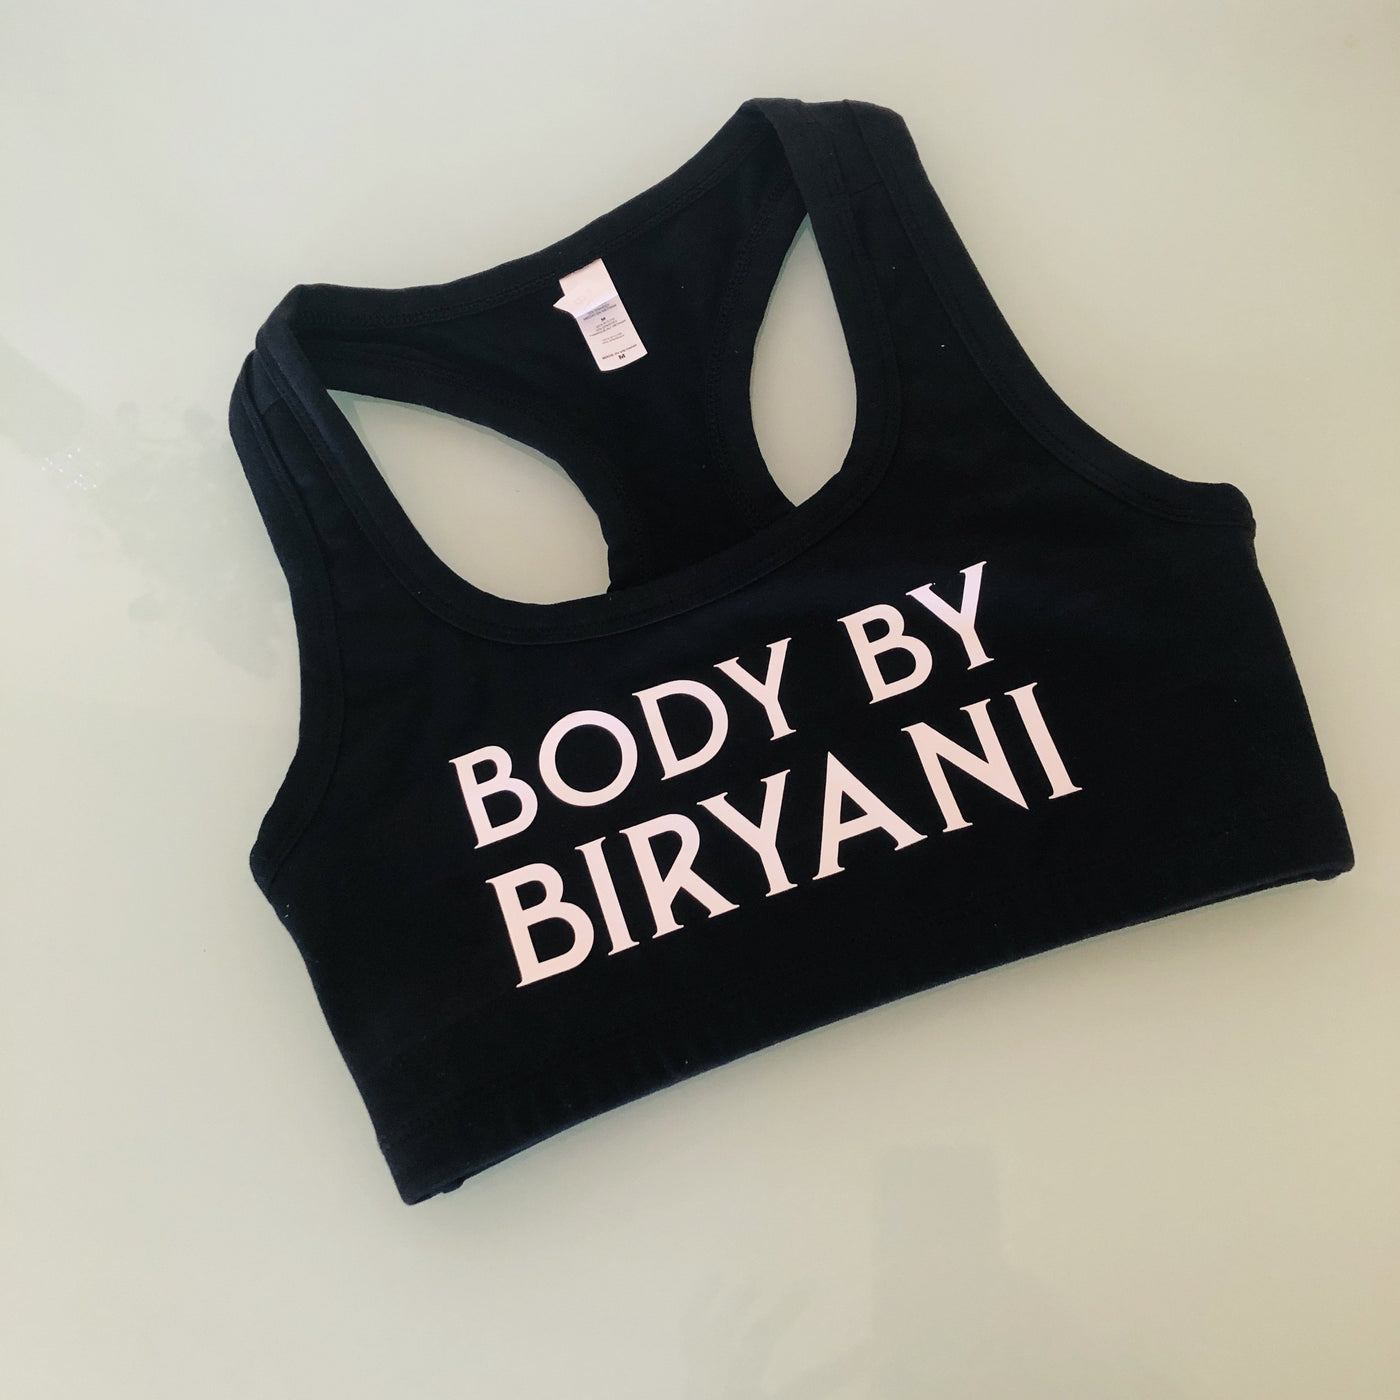 Body By Biryani Sports Bra